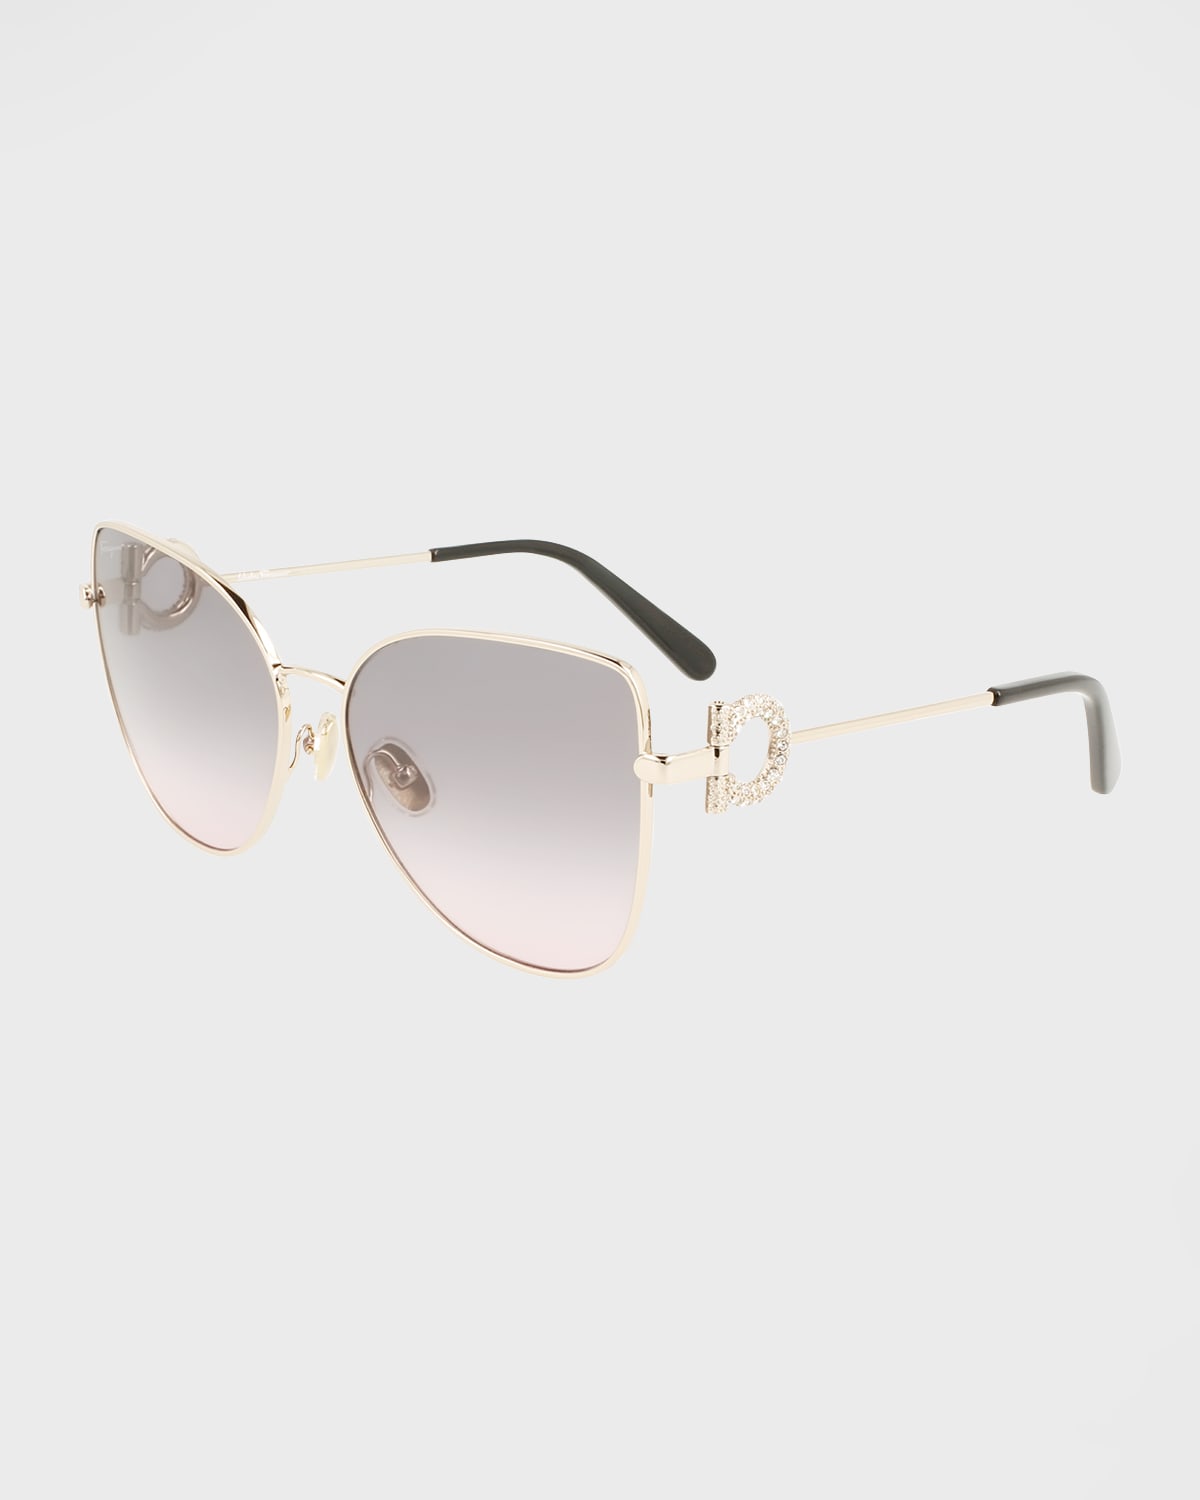 Ferragamo Crystal Gancini Metal Cat-eye Sunglasses In Rose Gold/gray Gradient